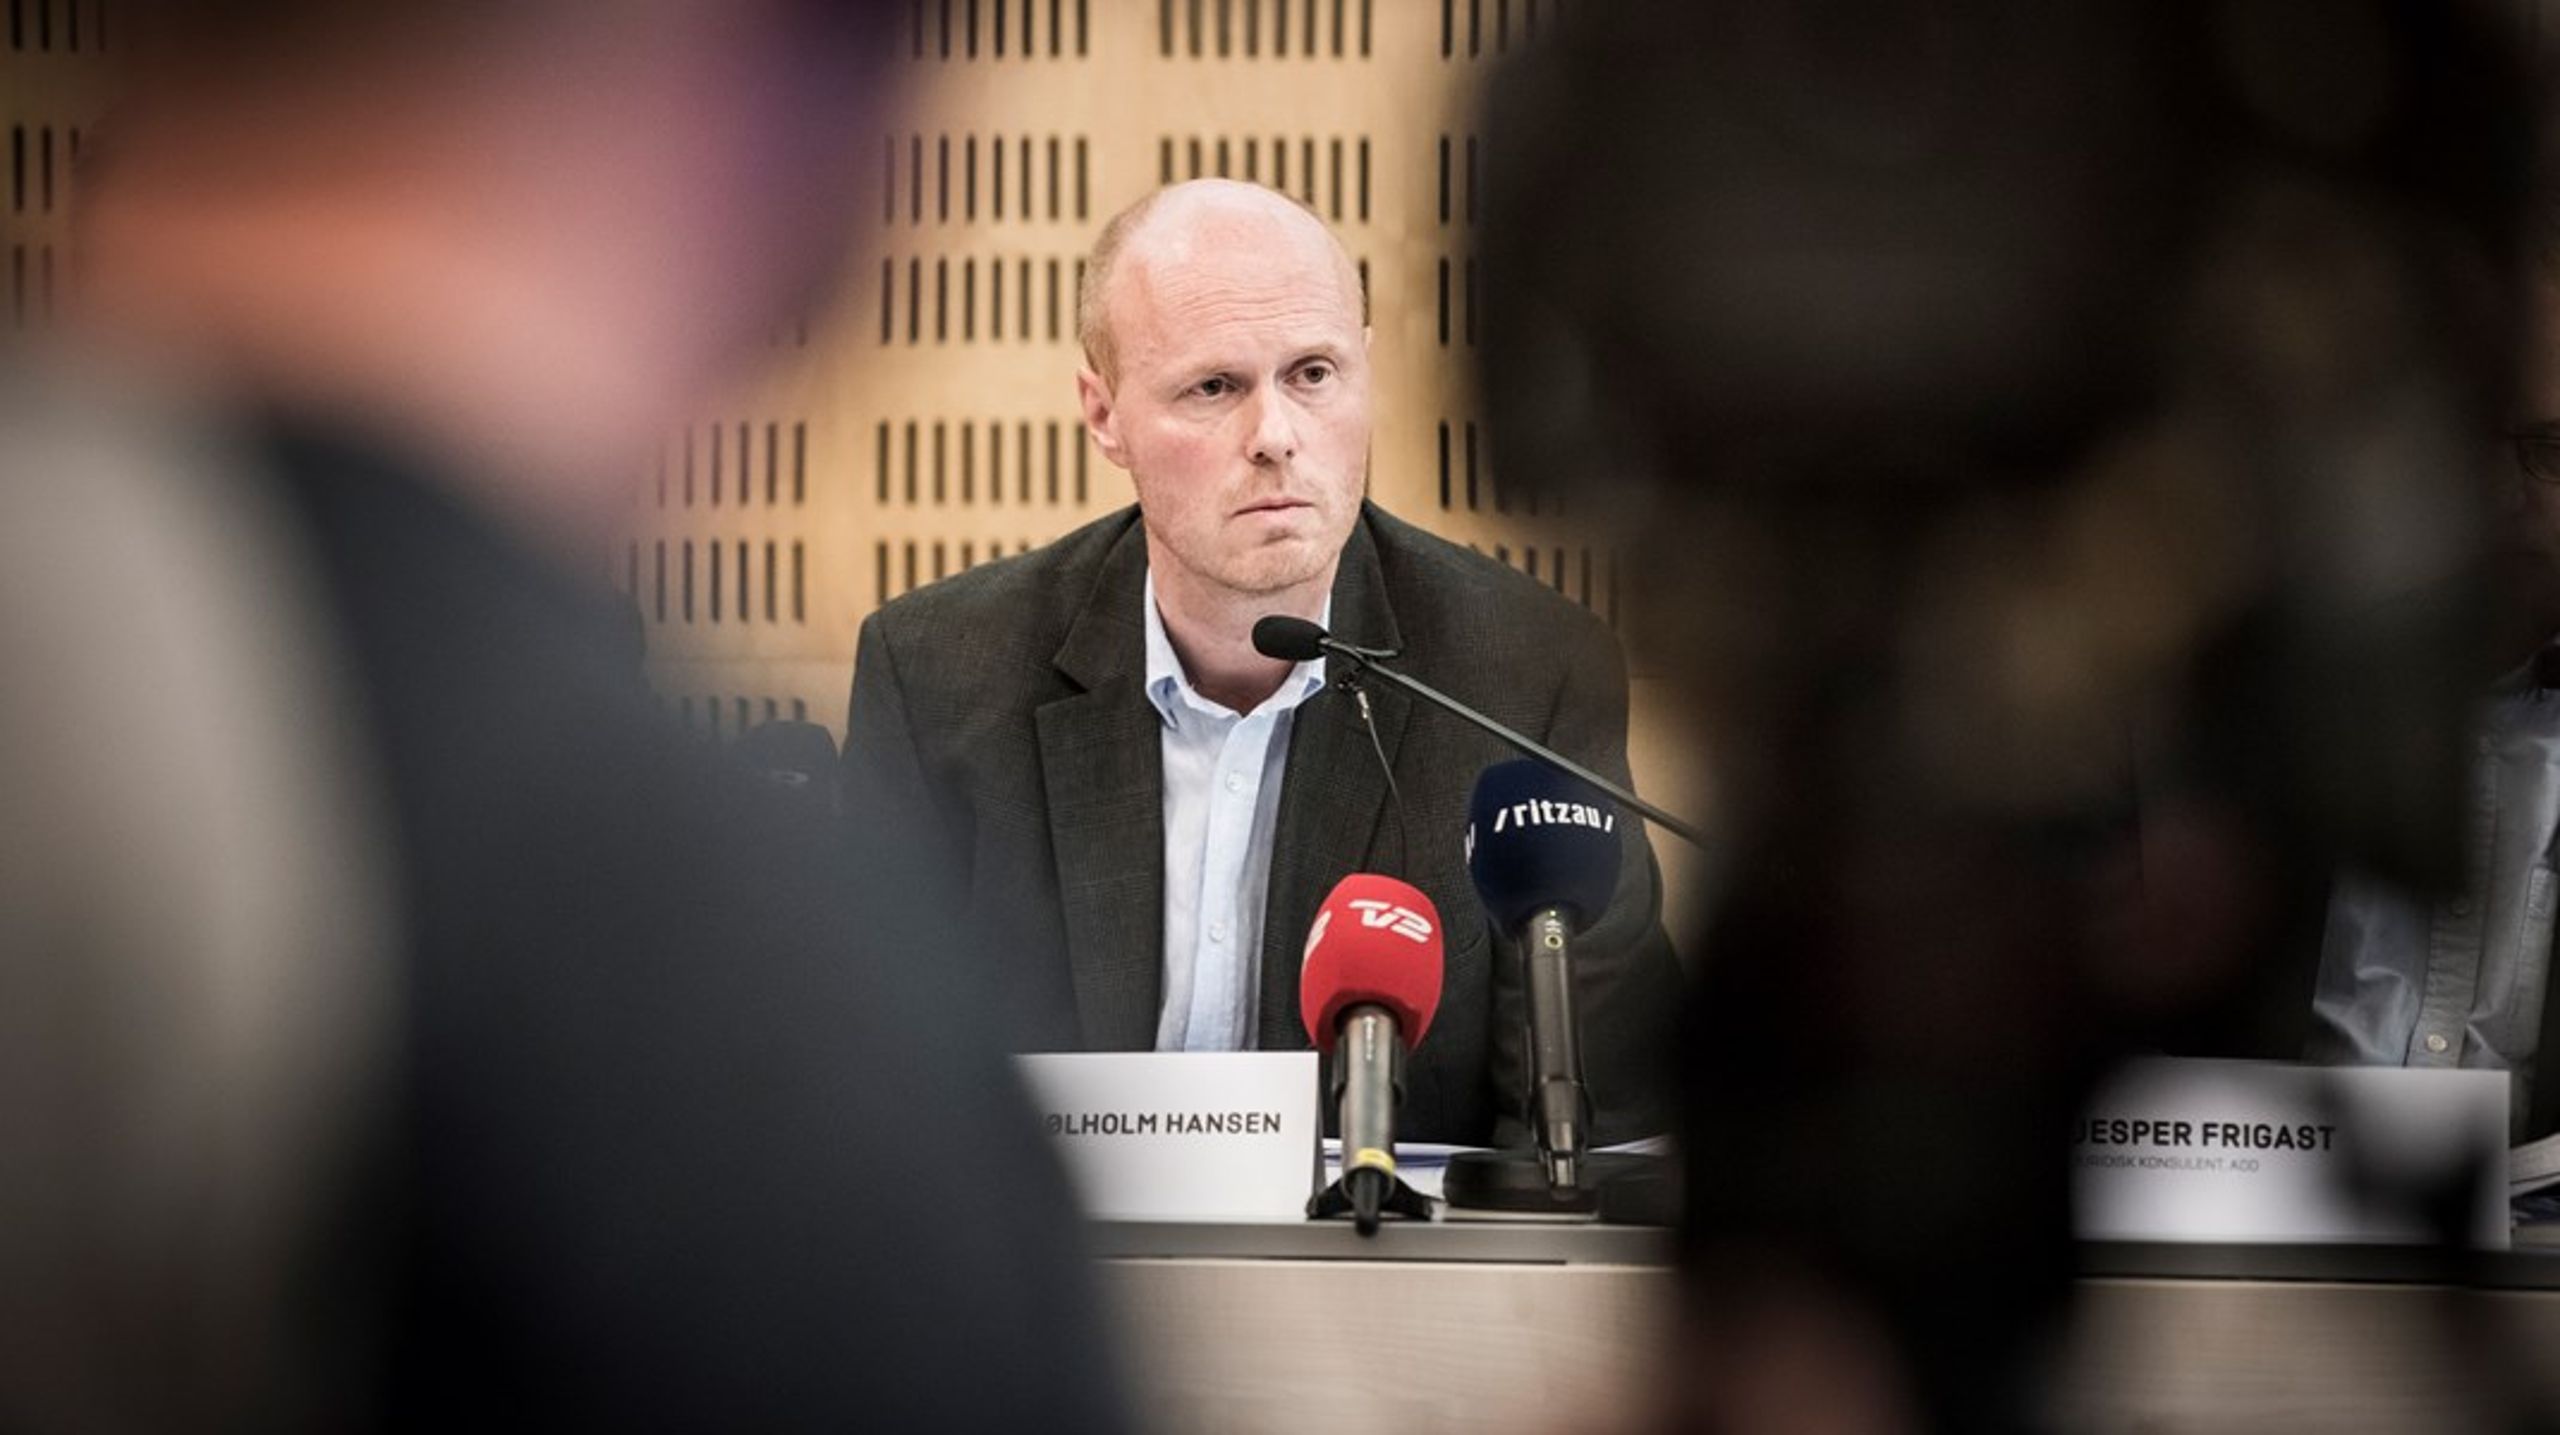 DIF-direktør er blevet beskyldt for at være inhabil af Dansk Padel Forbund. Men der er ikke hold i anklagerne, fastslår eksperter.